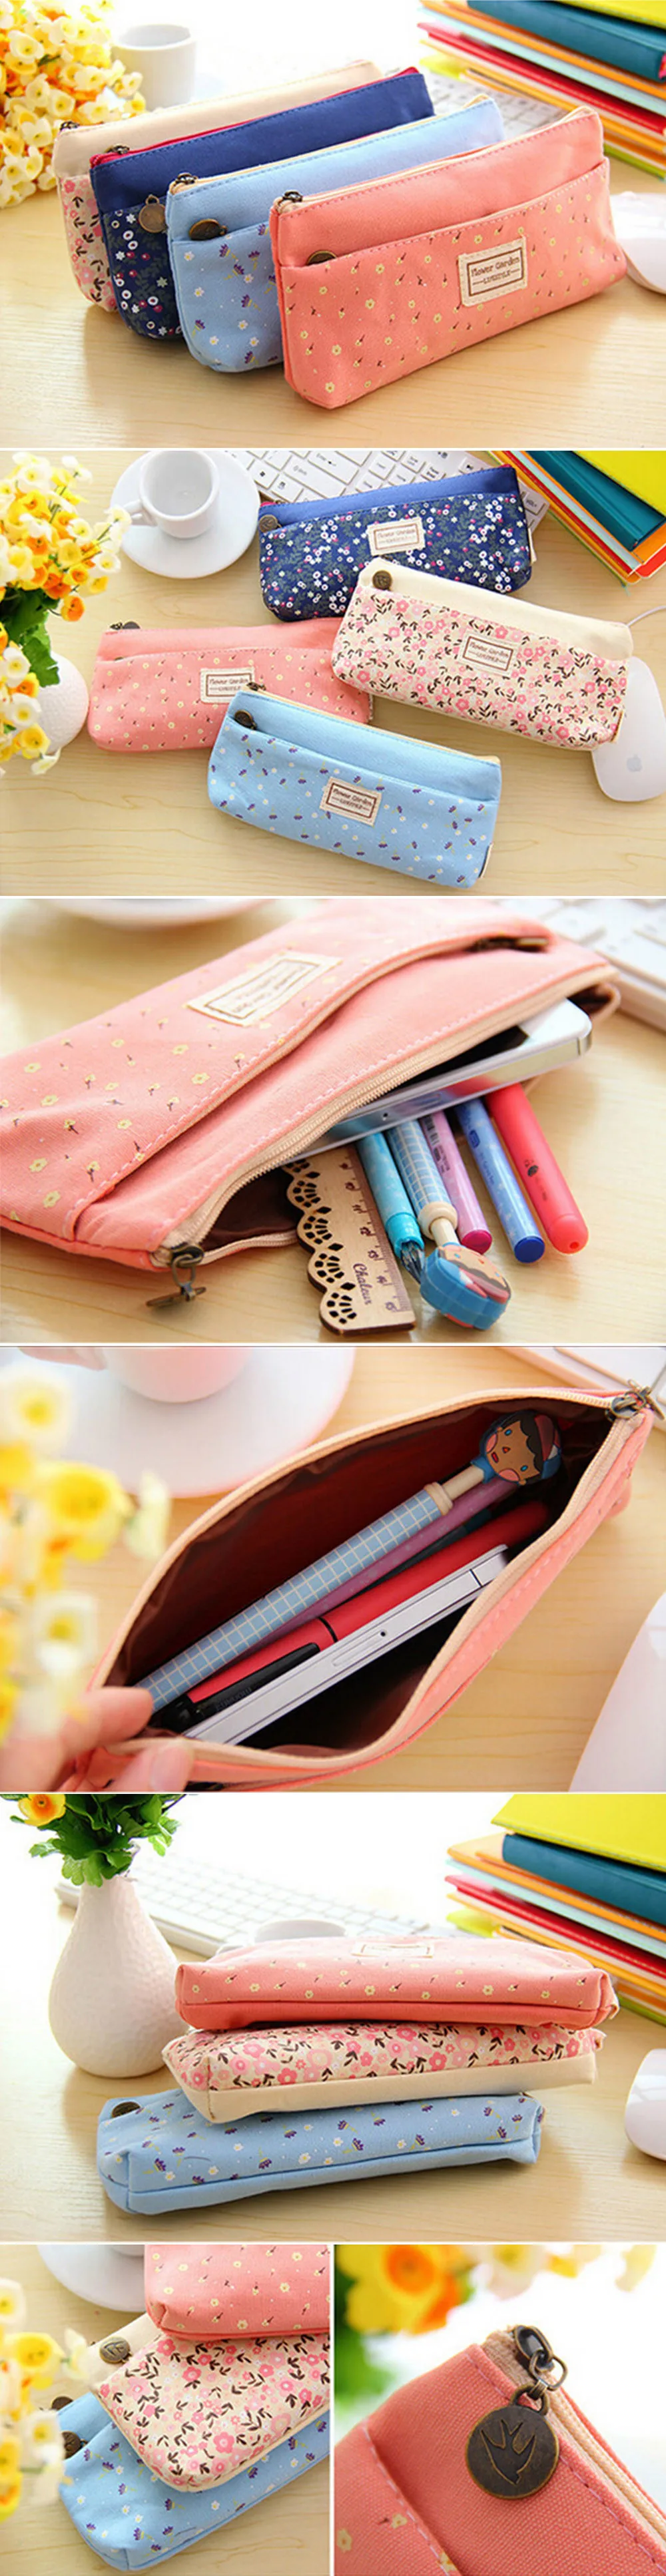 Цветочный Карандаш Чехол корейское платье-Карандаш сумка, школьные принадлежности материал estojo escolar stion косметички